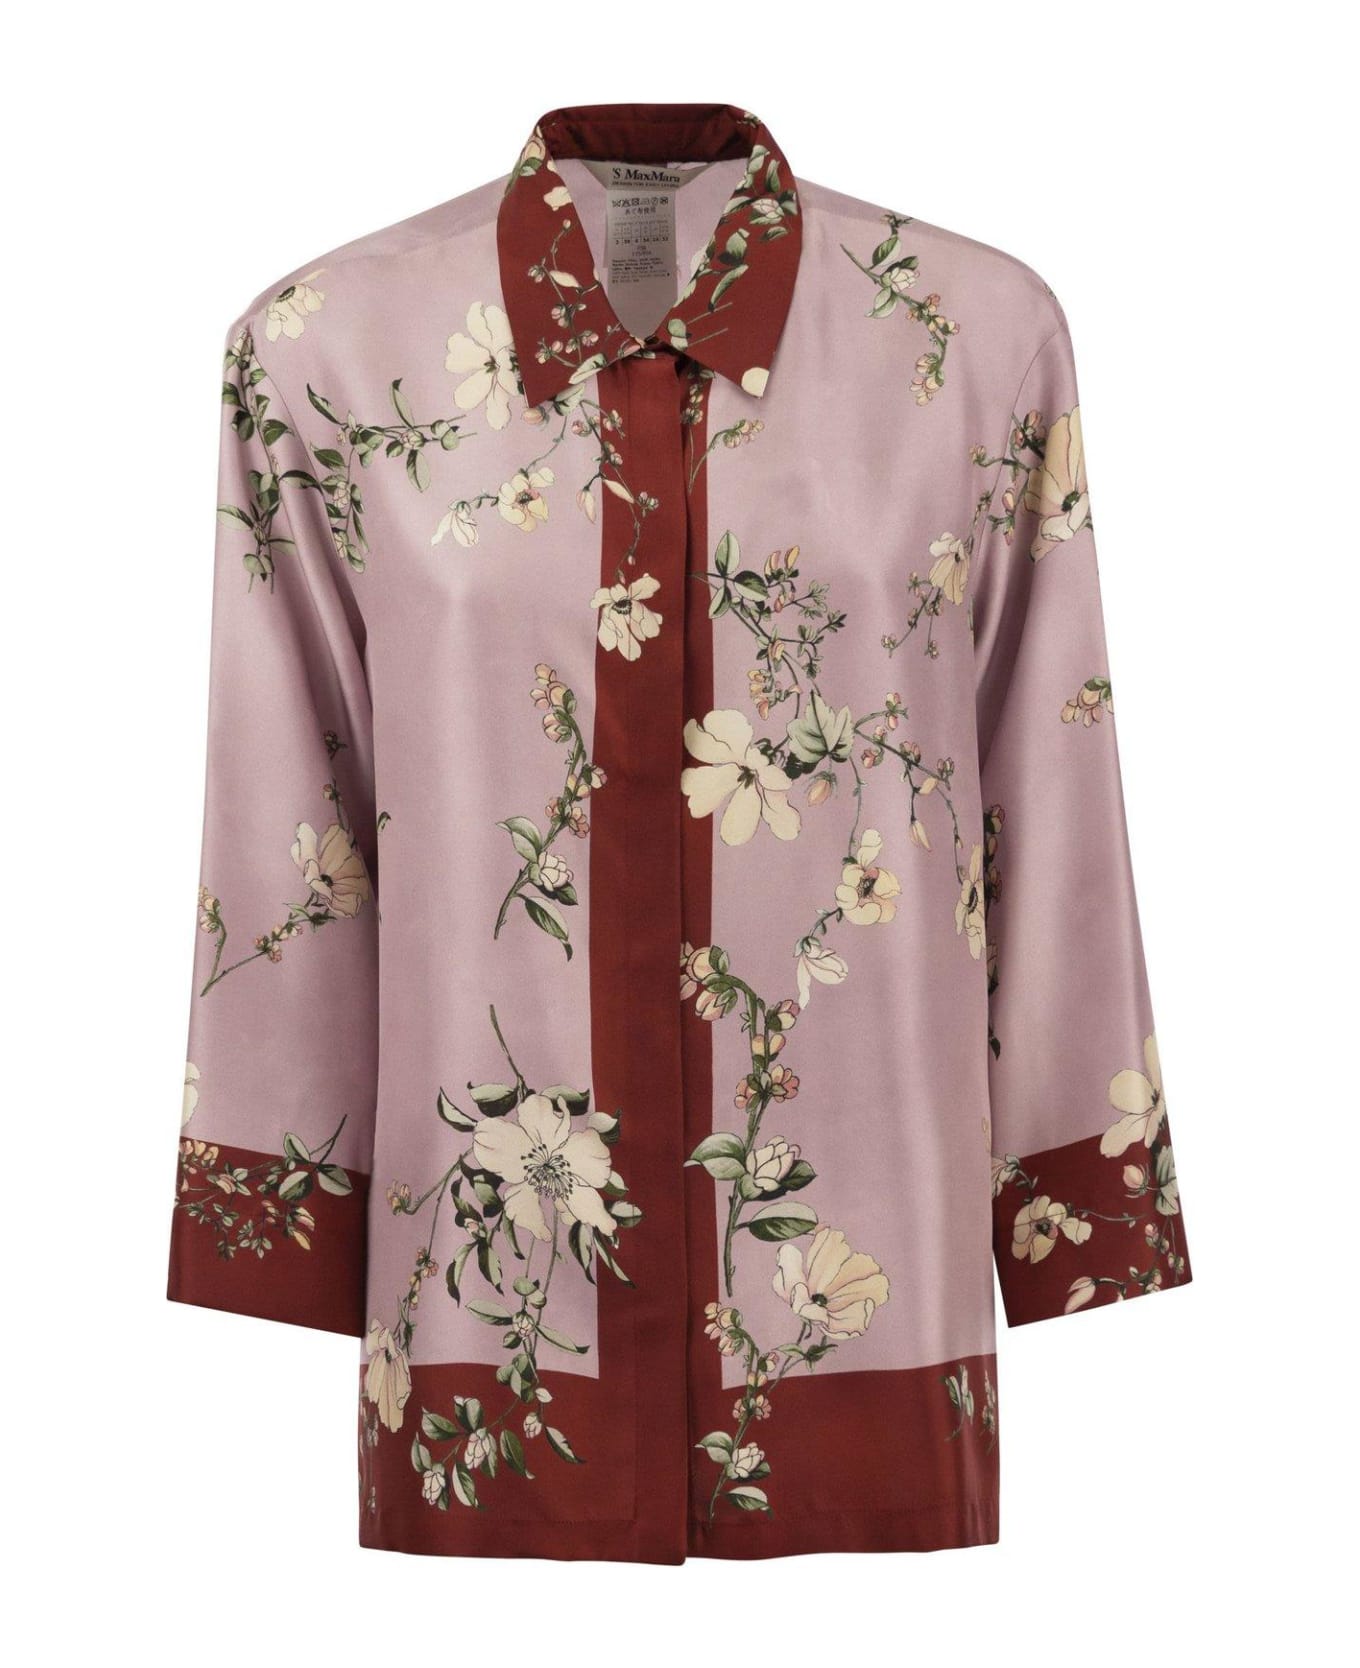 'S Max Mara Floral Printed Long-sleeved Shirt - Rosa/rosso